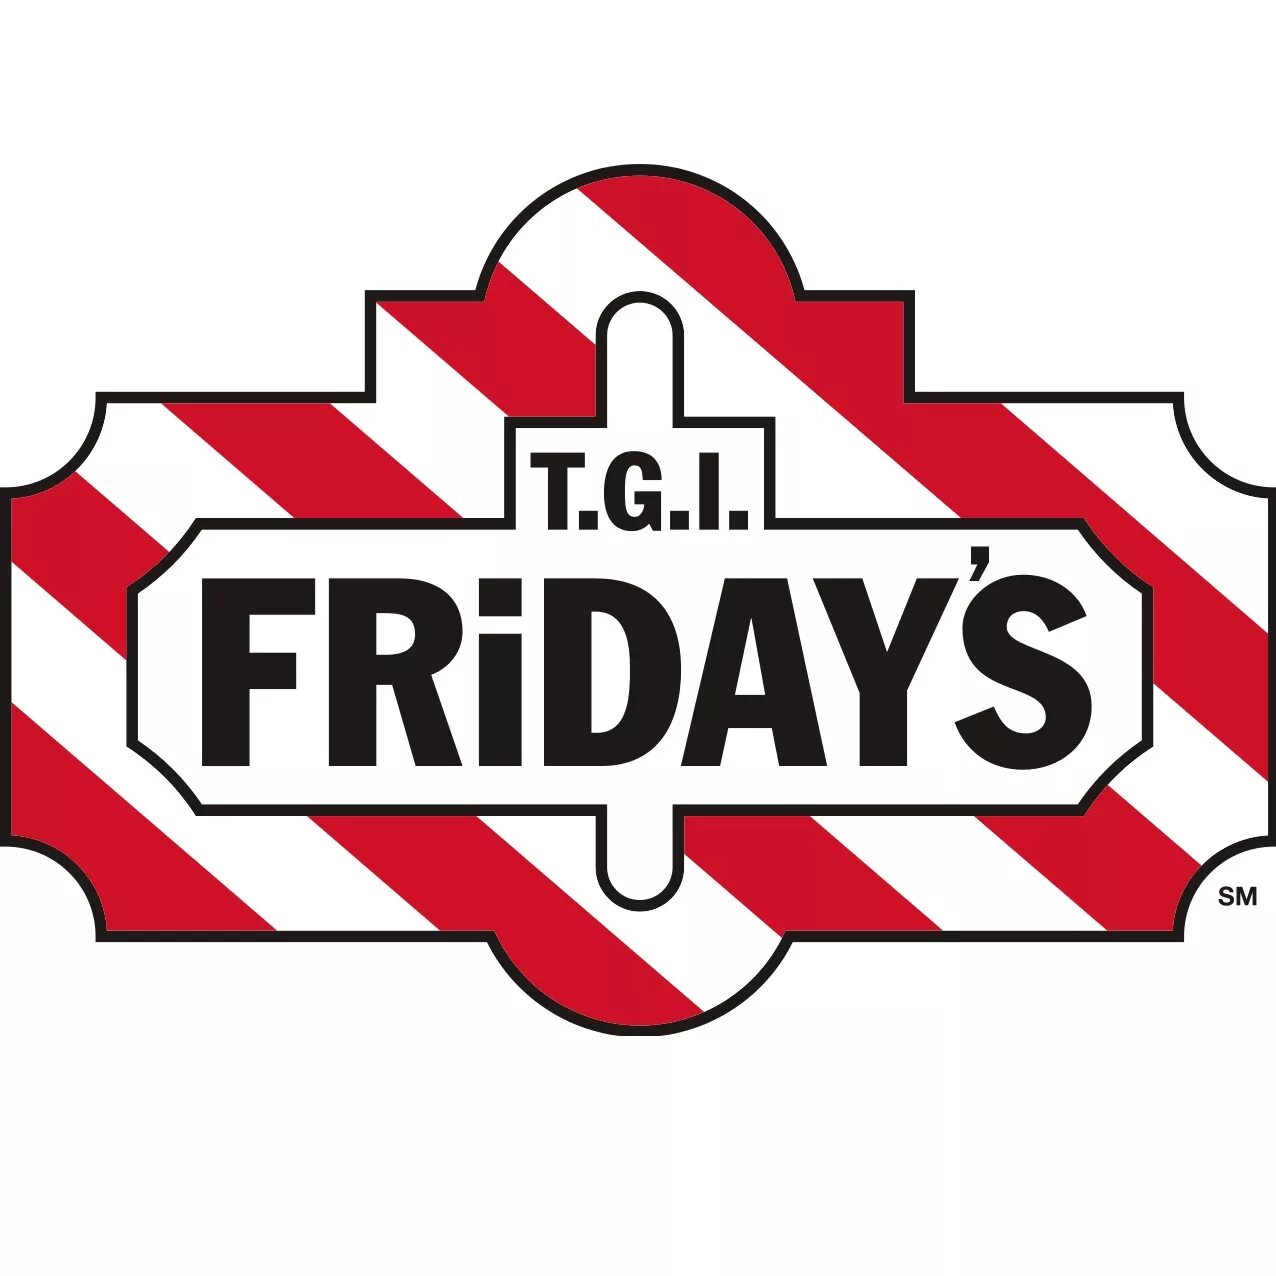 Фрайдис логотип. Ресторан TGI Fridays. TGI Friday's. TGI Fridays в России. Fridays visit